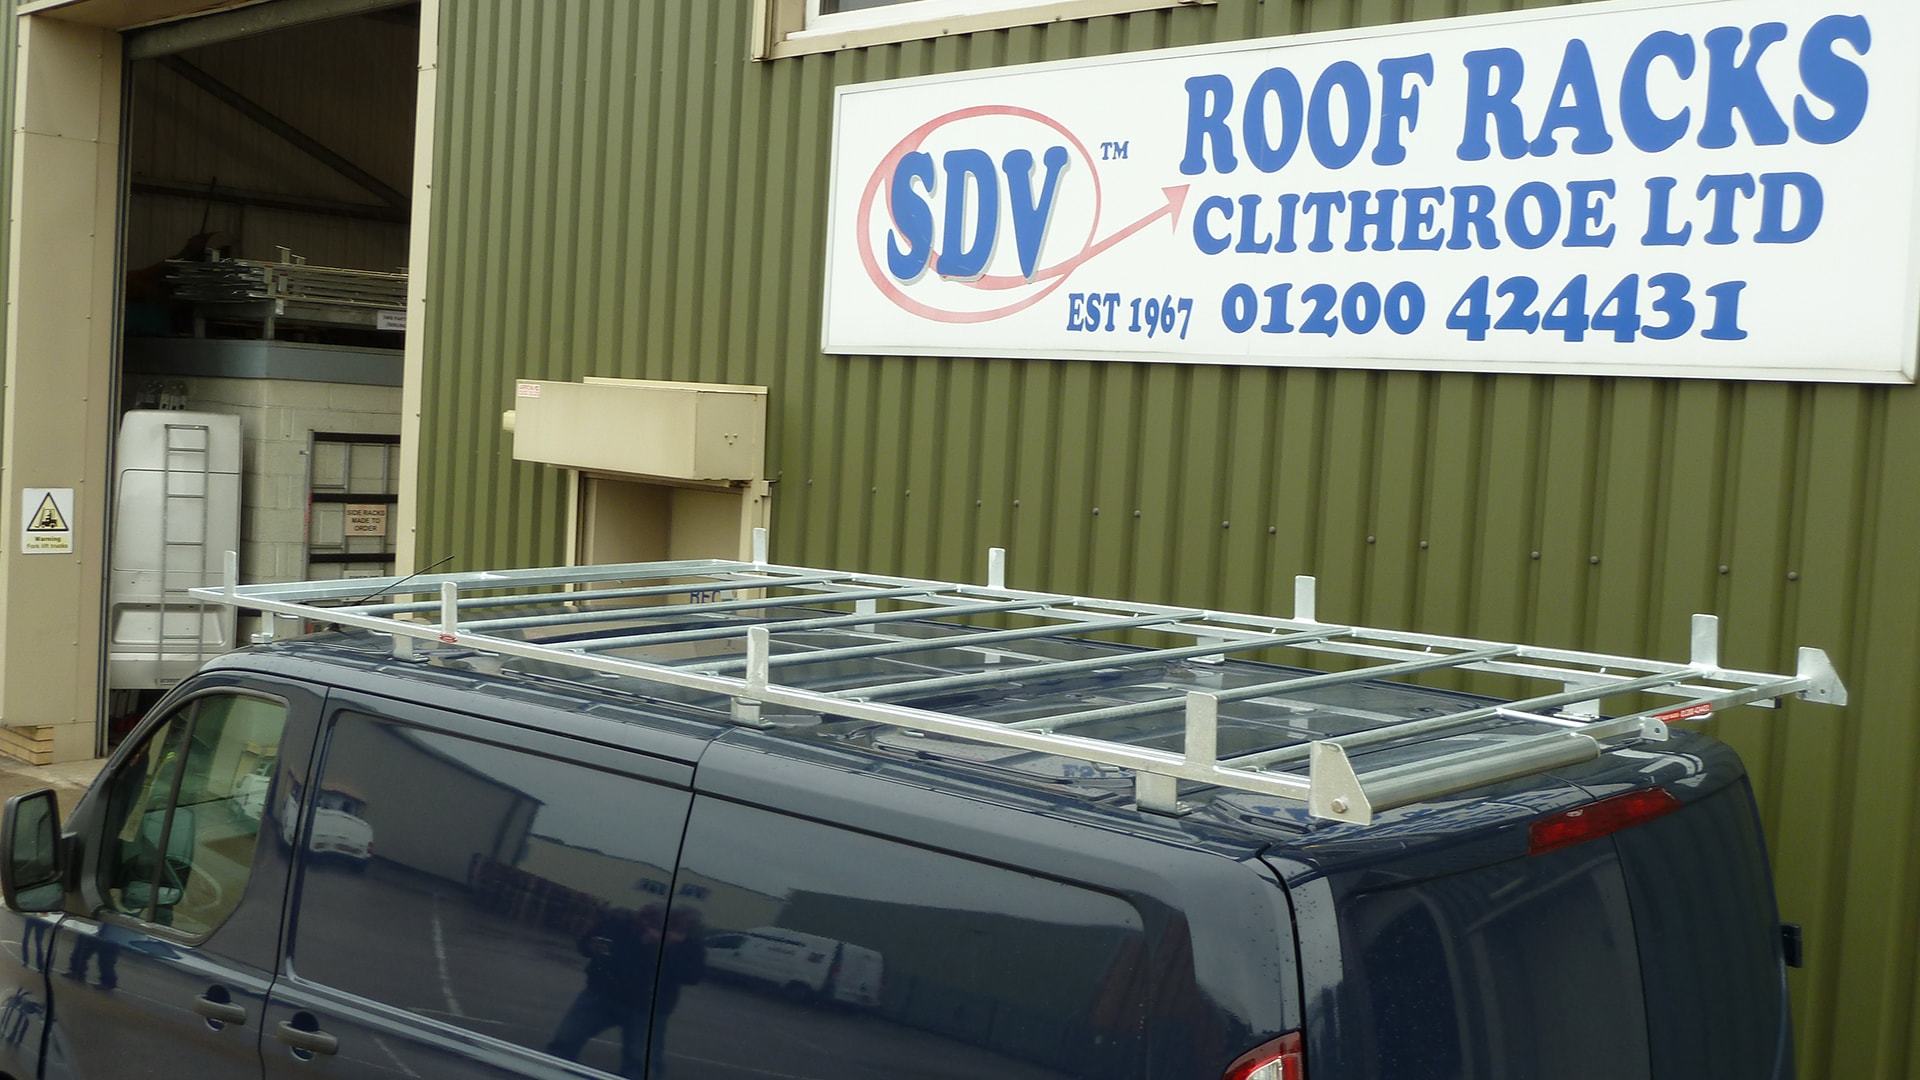 SDV Roof Racks  Heavy Duty Steel Roof Racks, North West UK